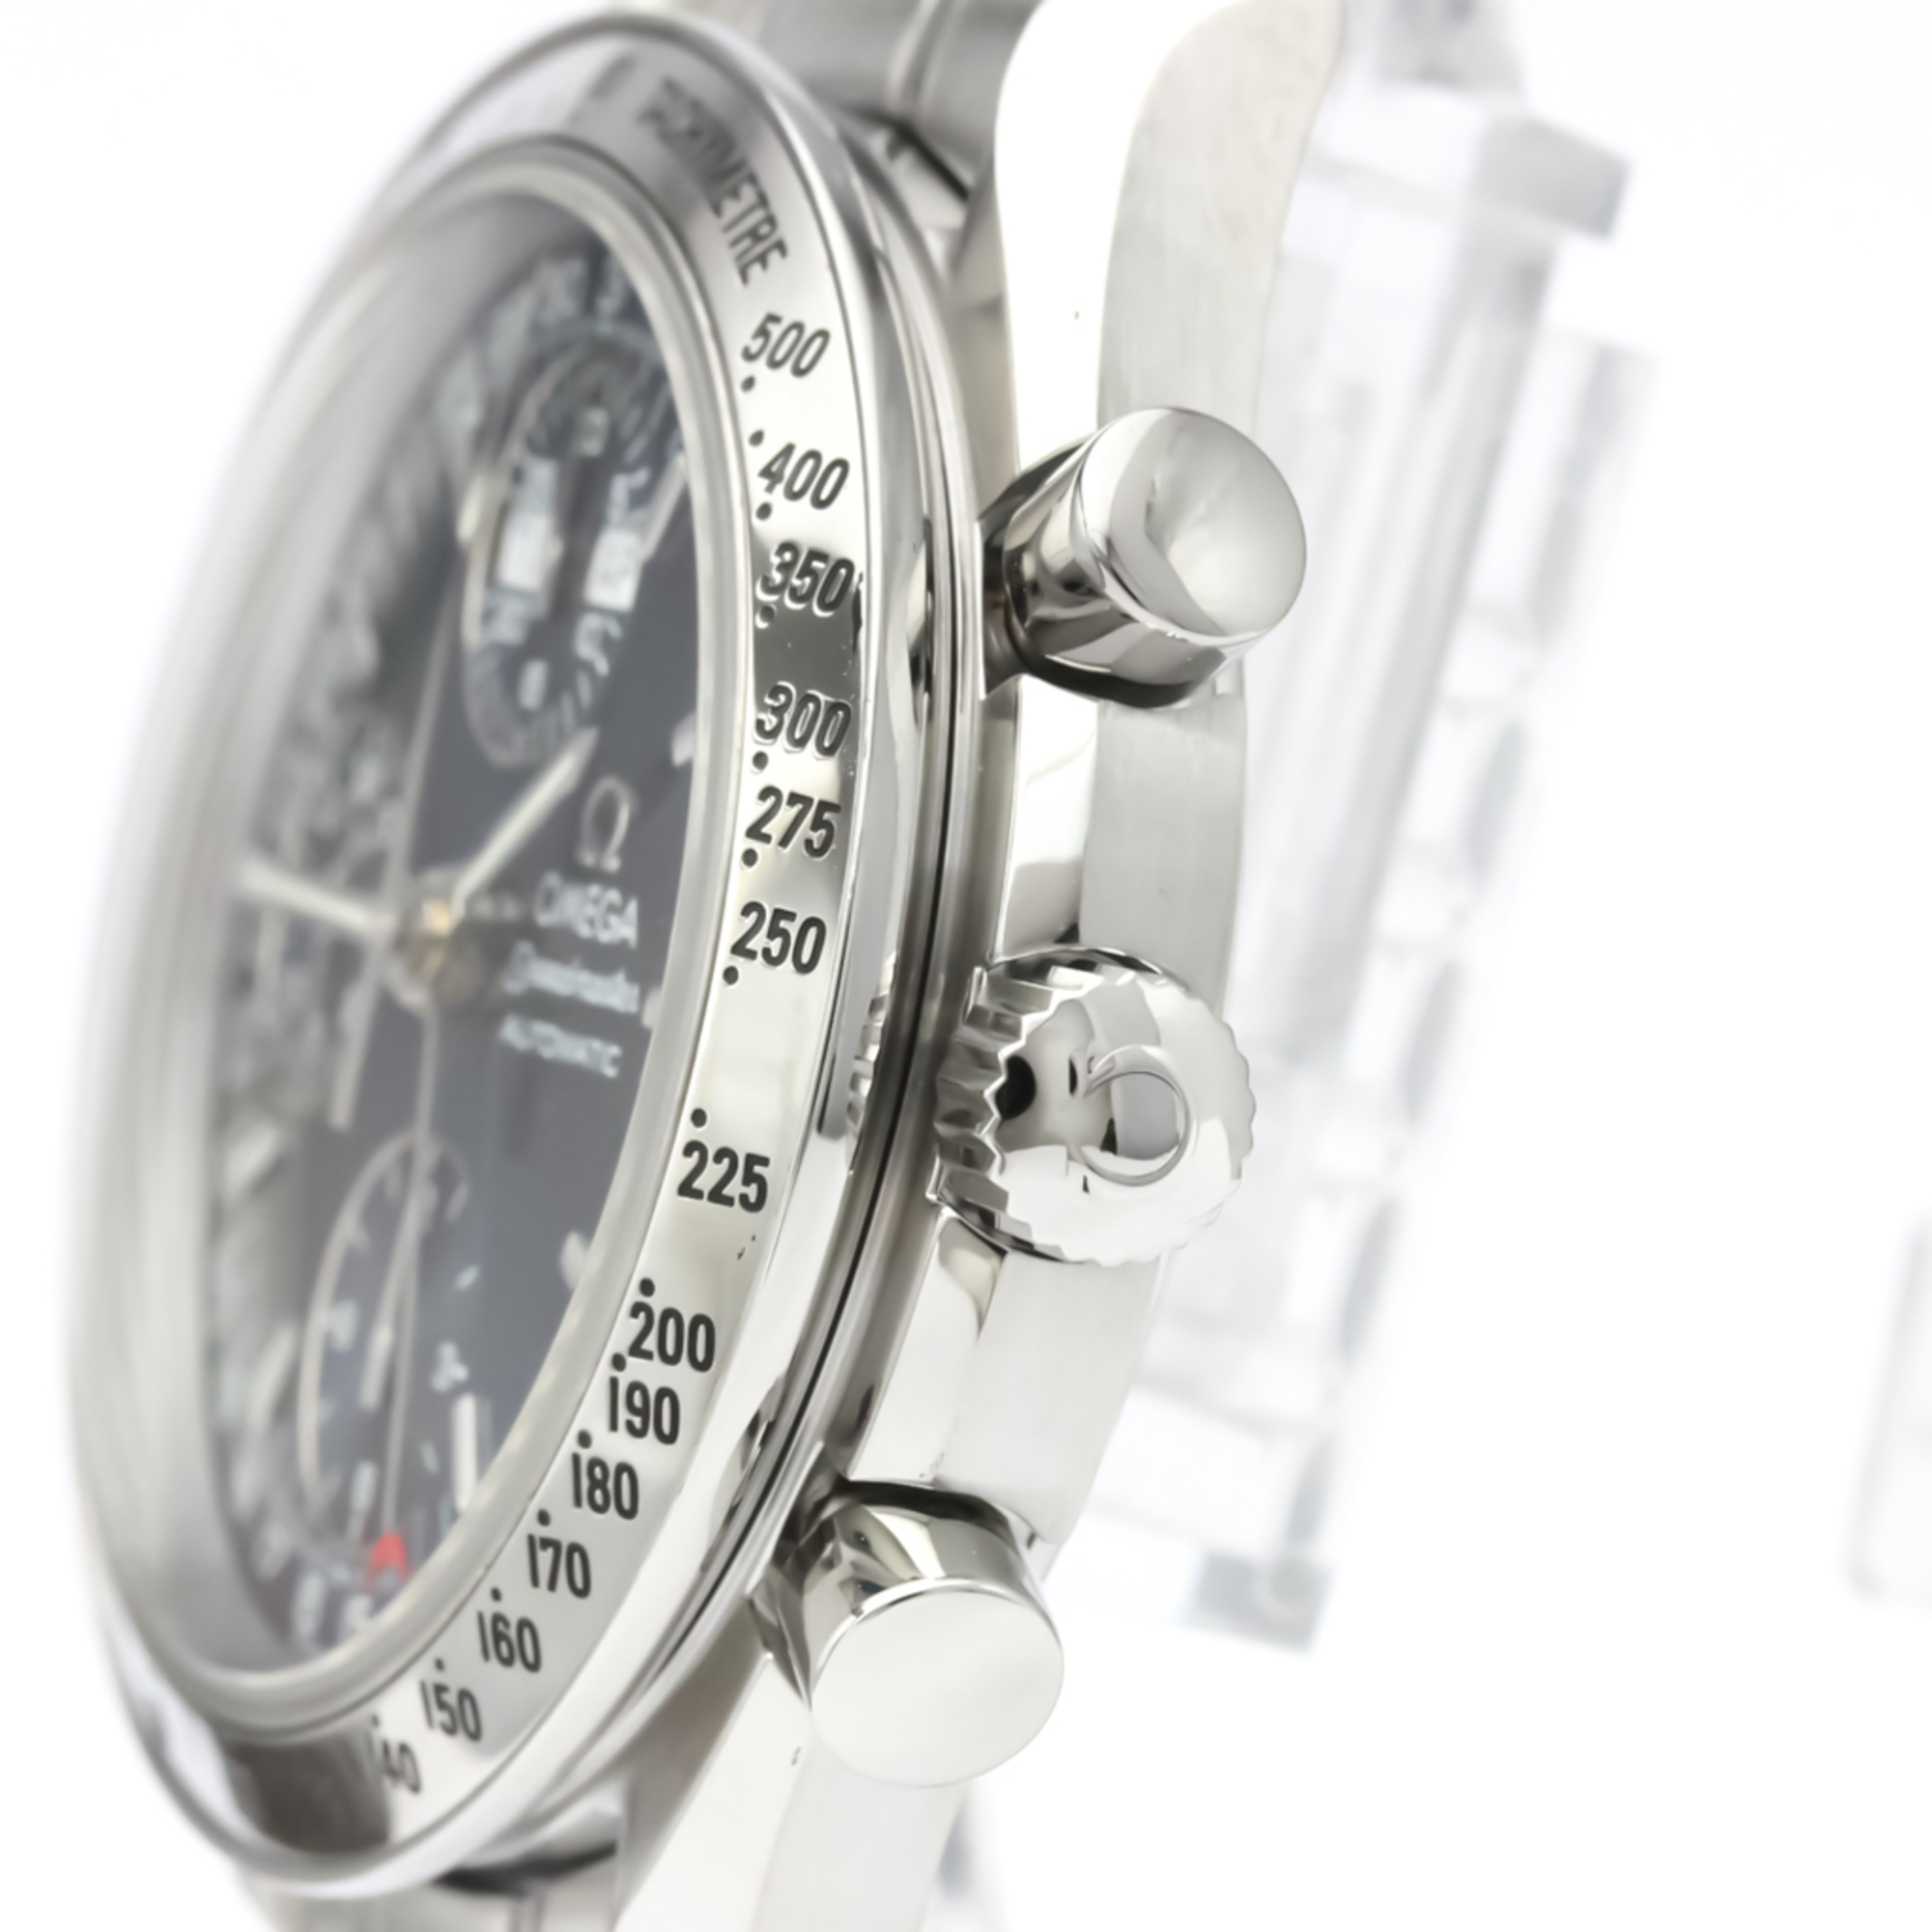 OMEGA Speedmaster Triple Date Steel Automatic Watch 3523.80